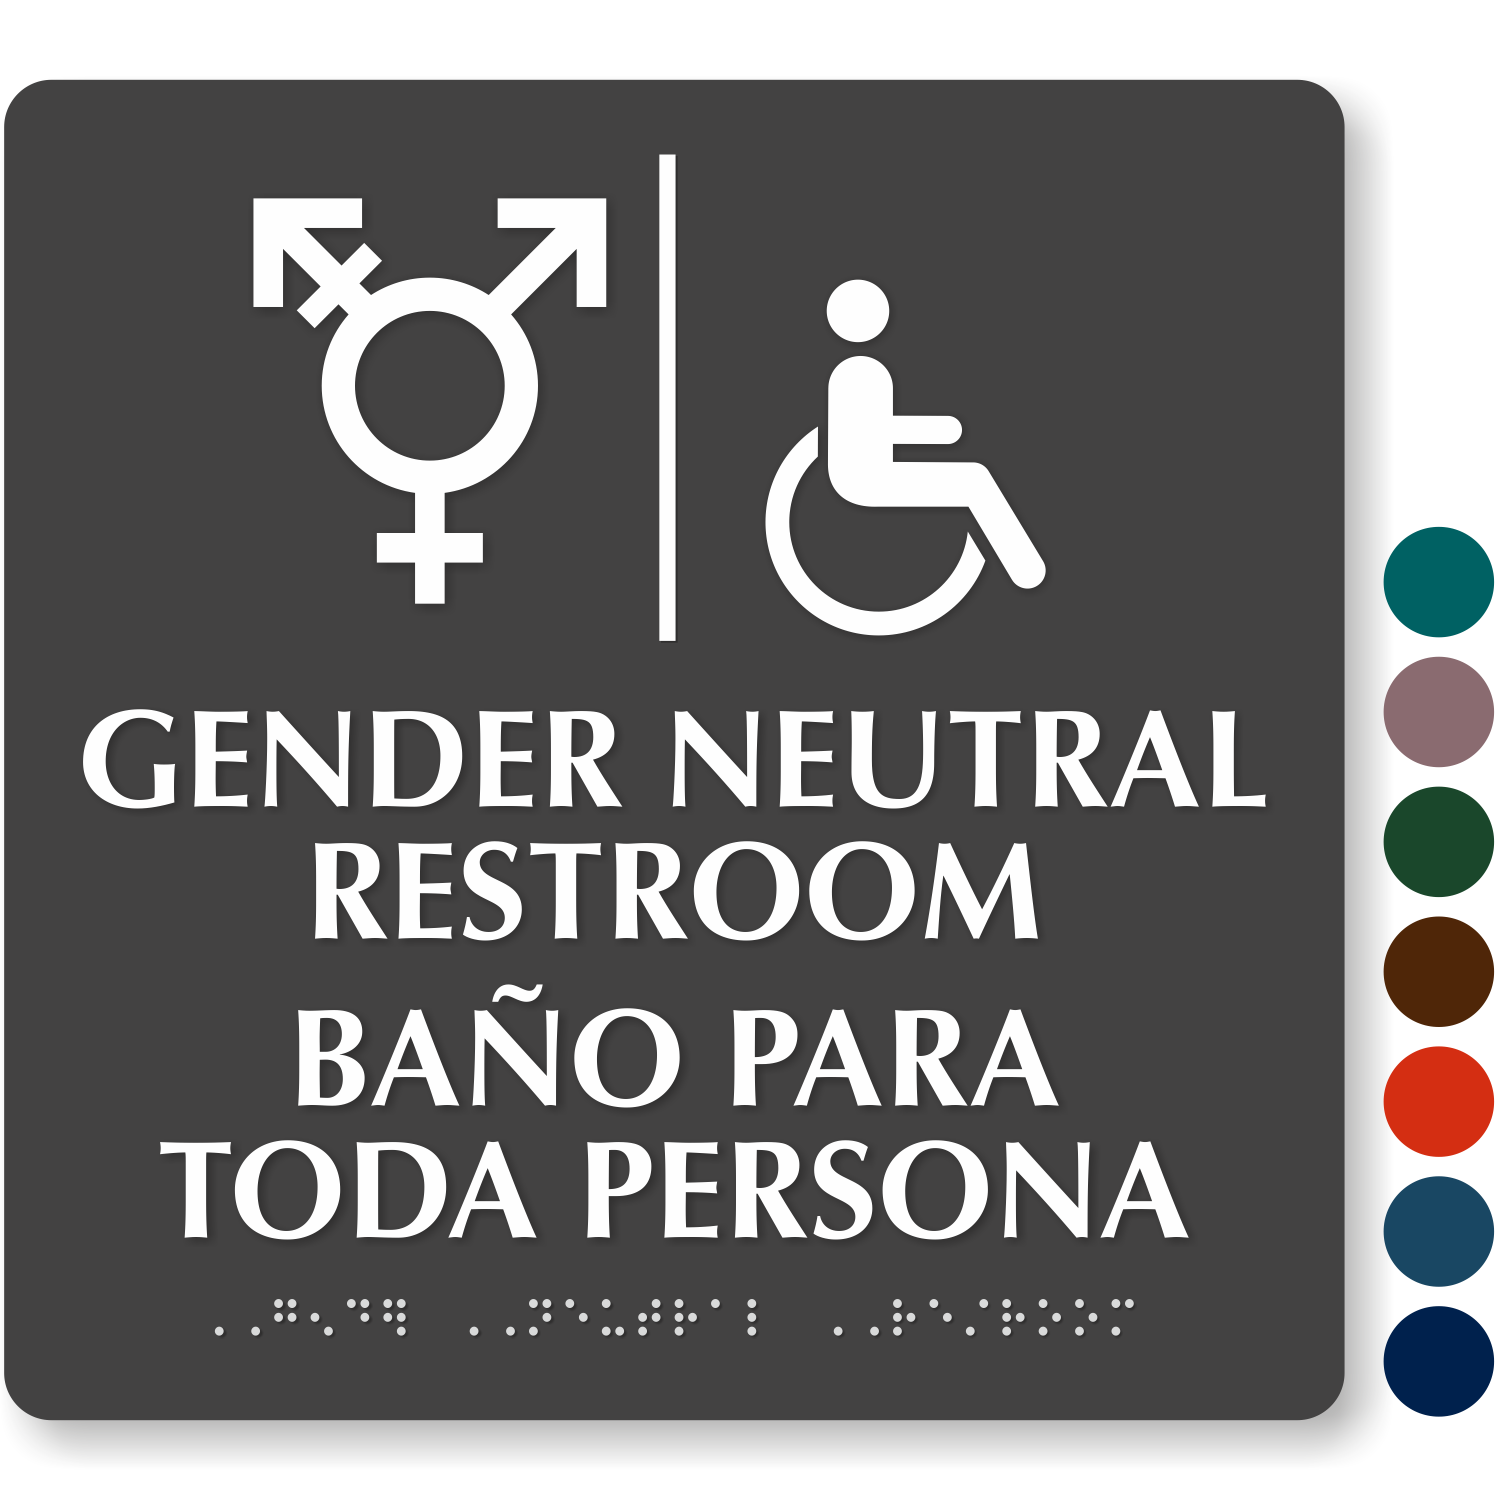 AllGender Restroom Signs Gender Neutral Restroom Signs